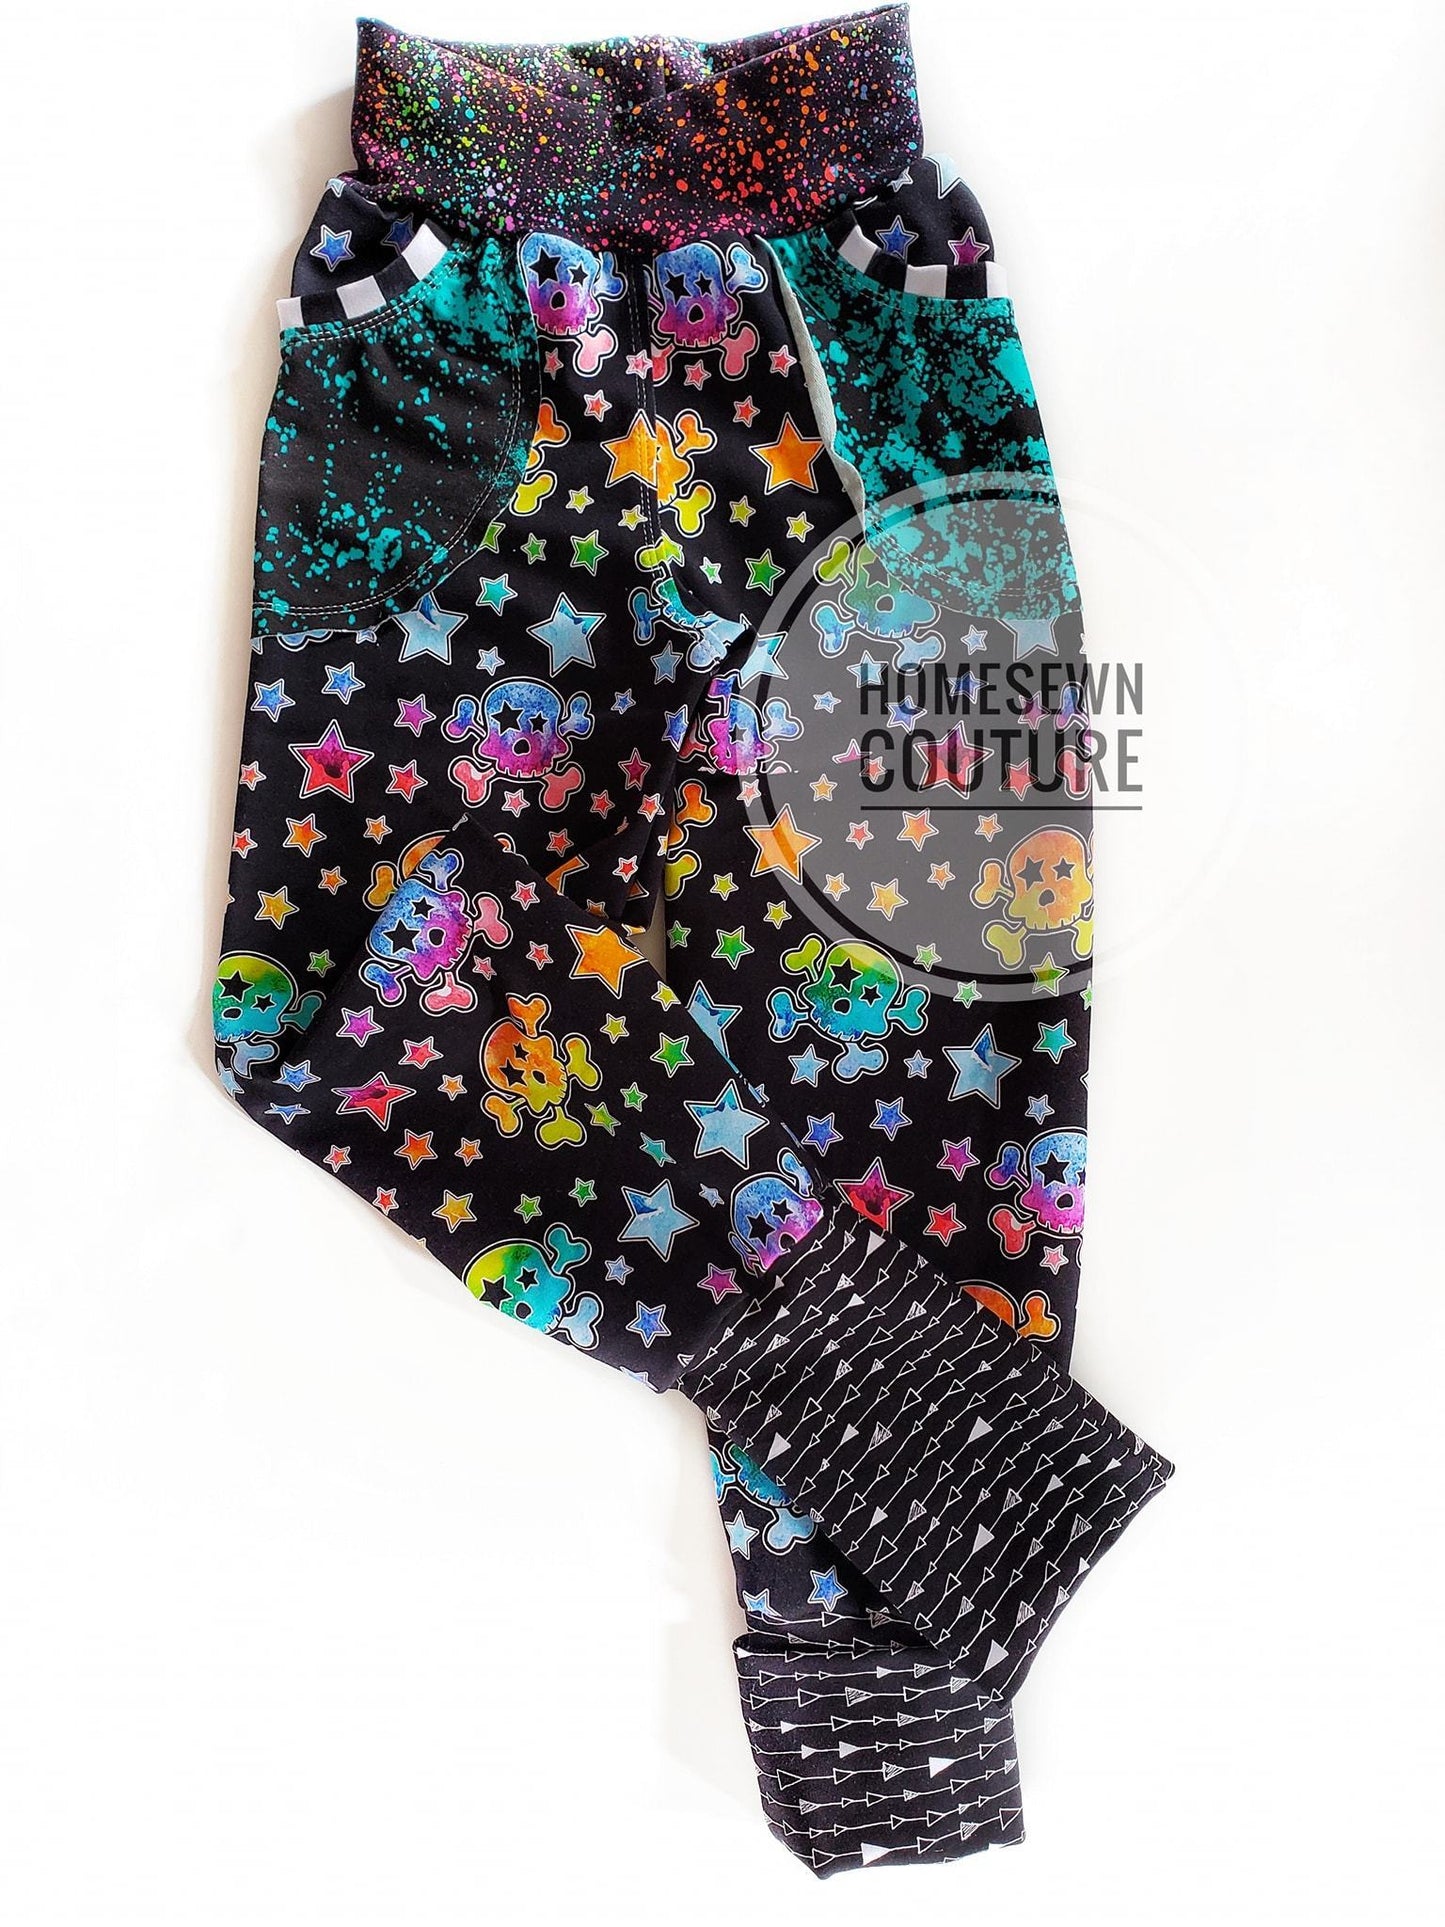 Squish - Round YY - PRIDE - Fabric Retail